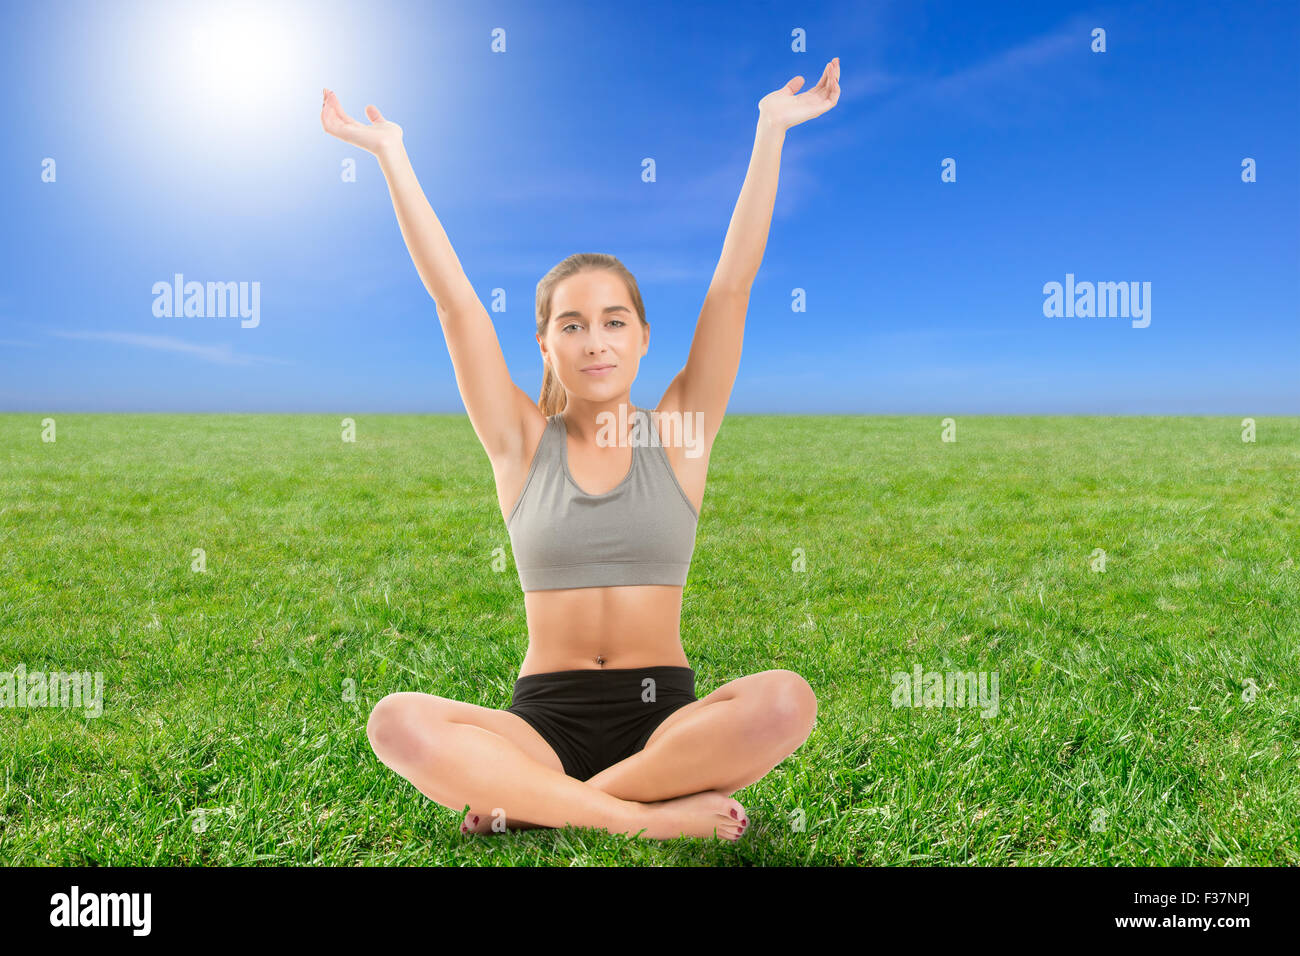 Frau praktizieren Yoga mit ihren Armen in der Luft sitzen auf dem Rasen, Hintergrundbeleuchtung Stockfoto